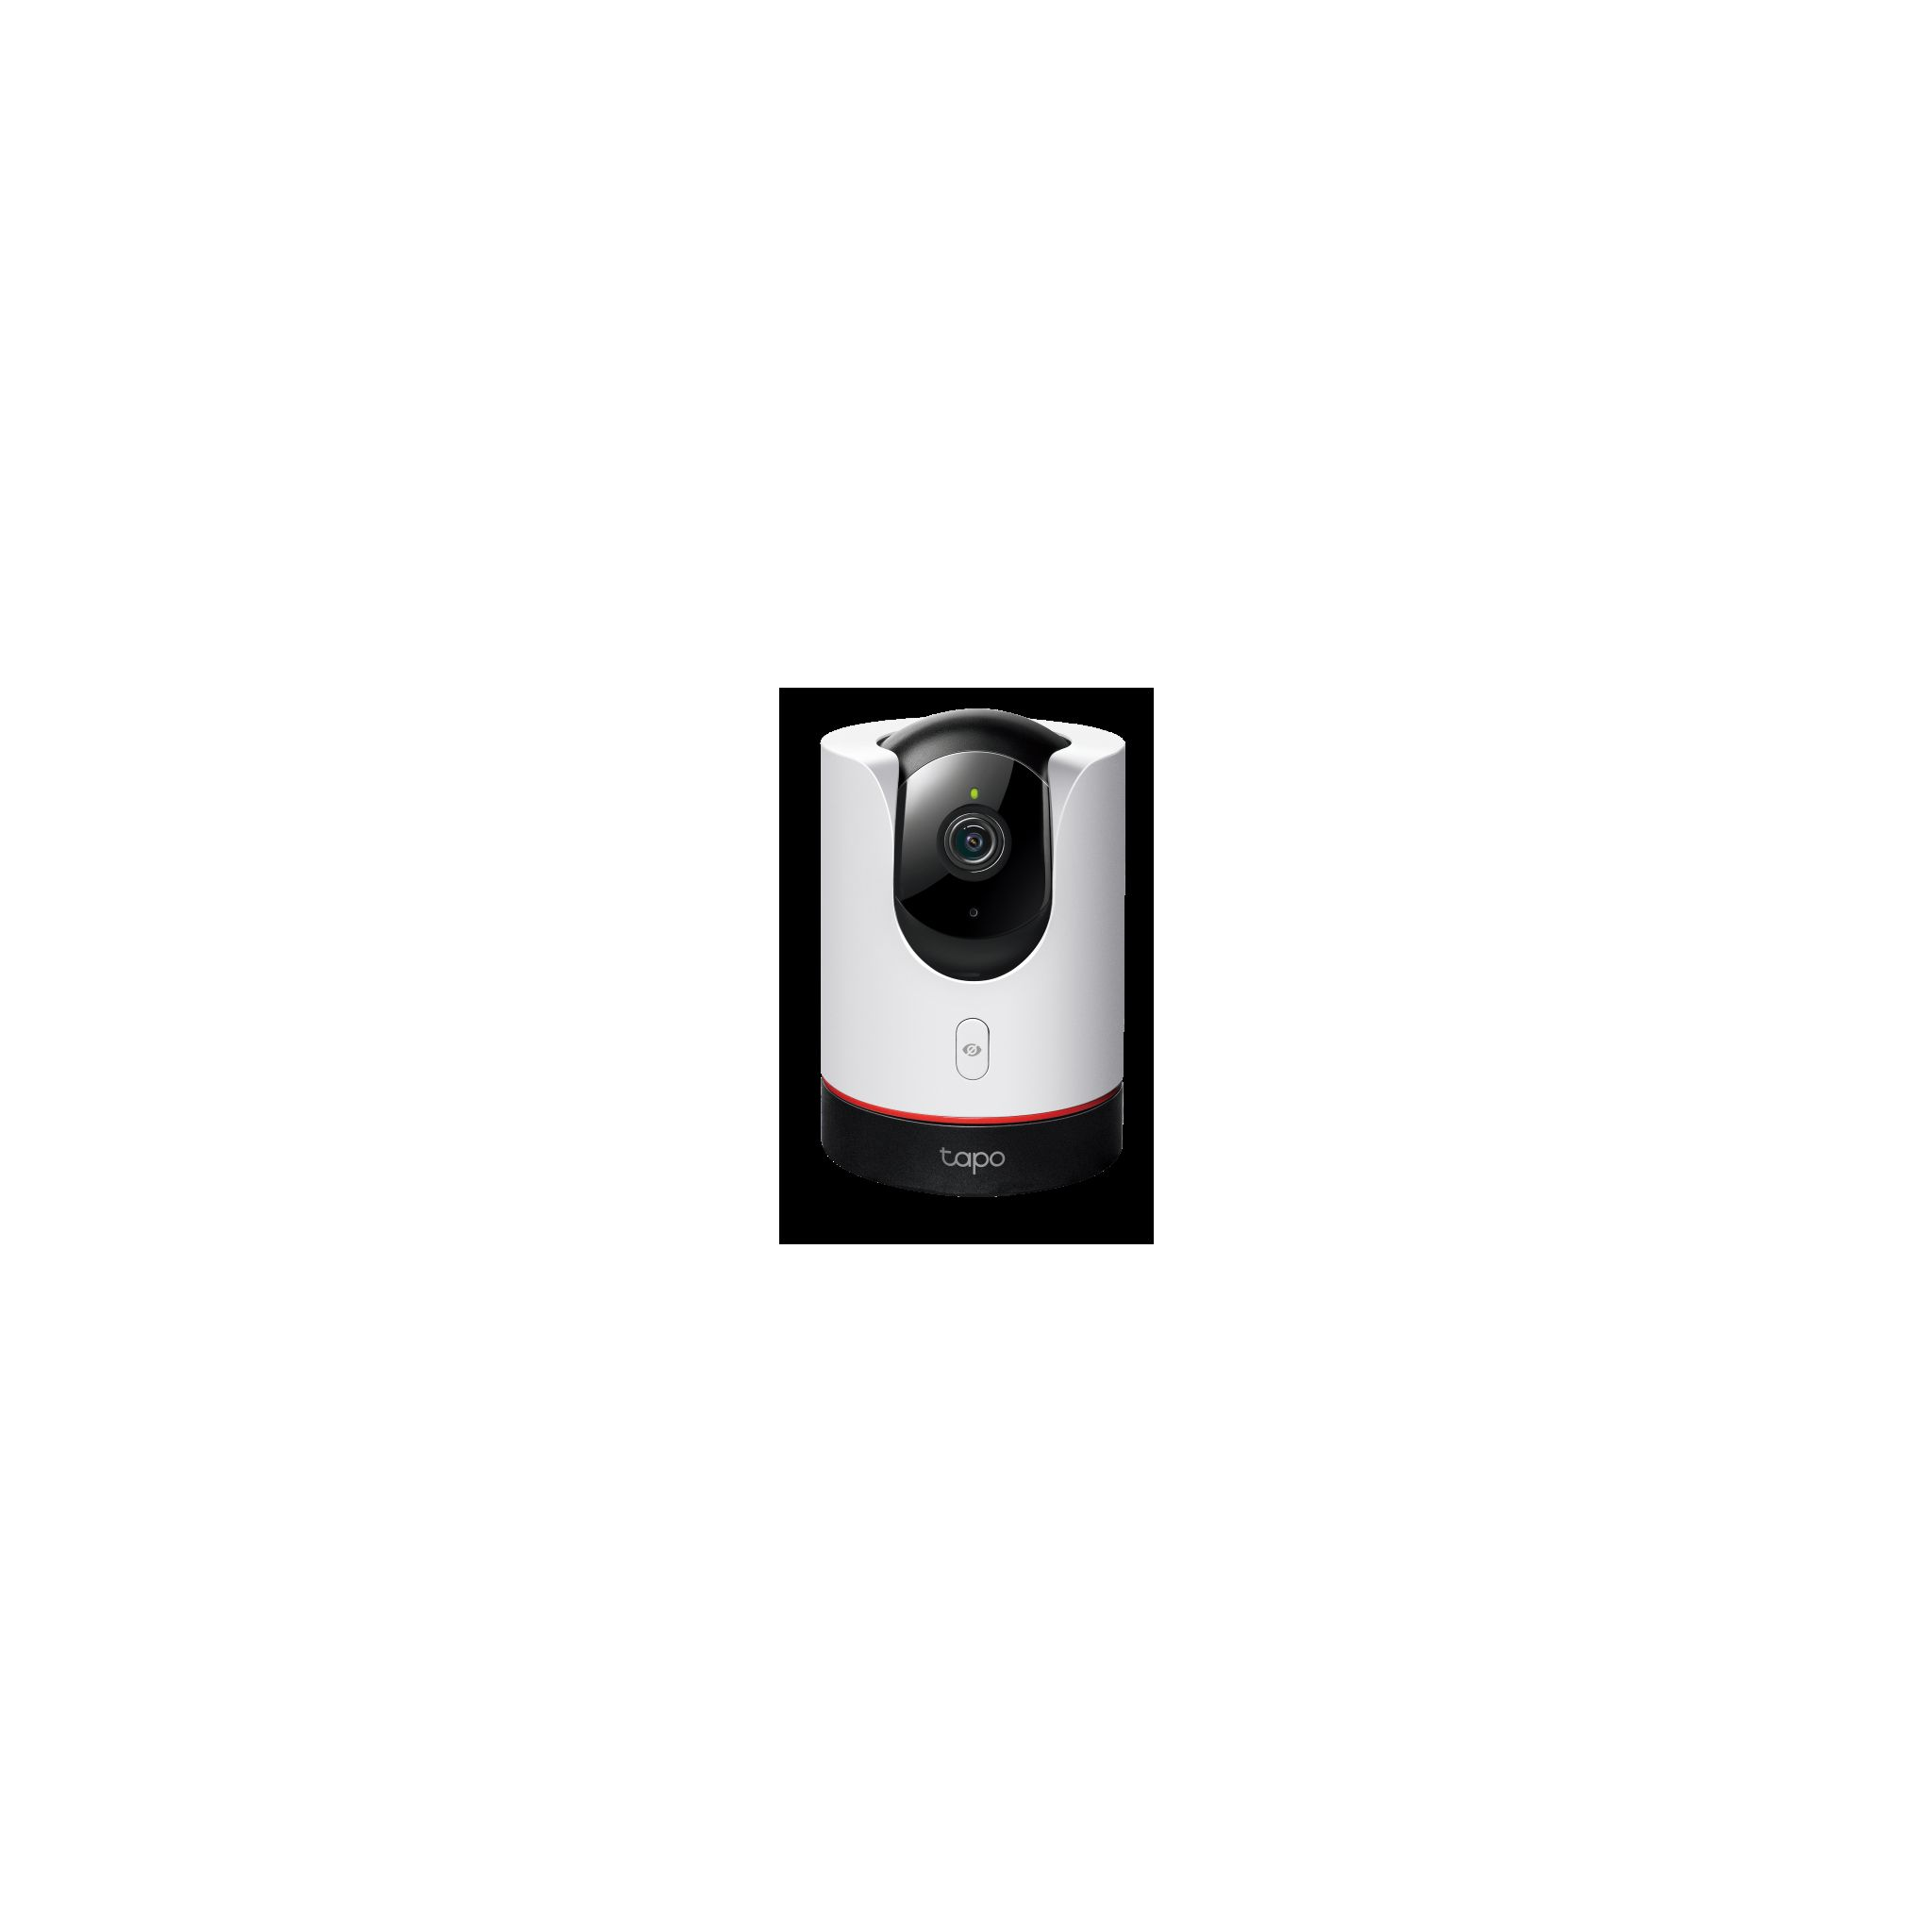 Auflösung Tapo Überwachungskamera, 2560 WLAN 1440 TP-LINK Video: C225, x